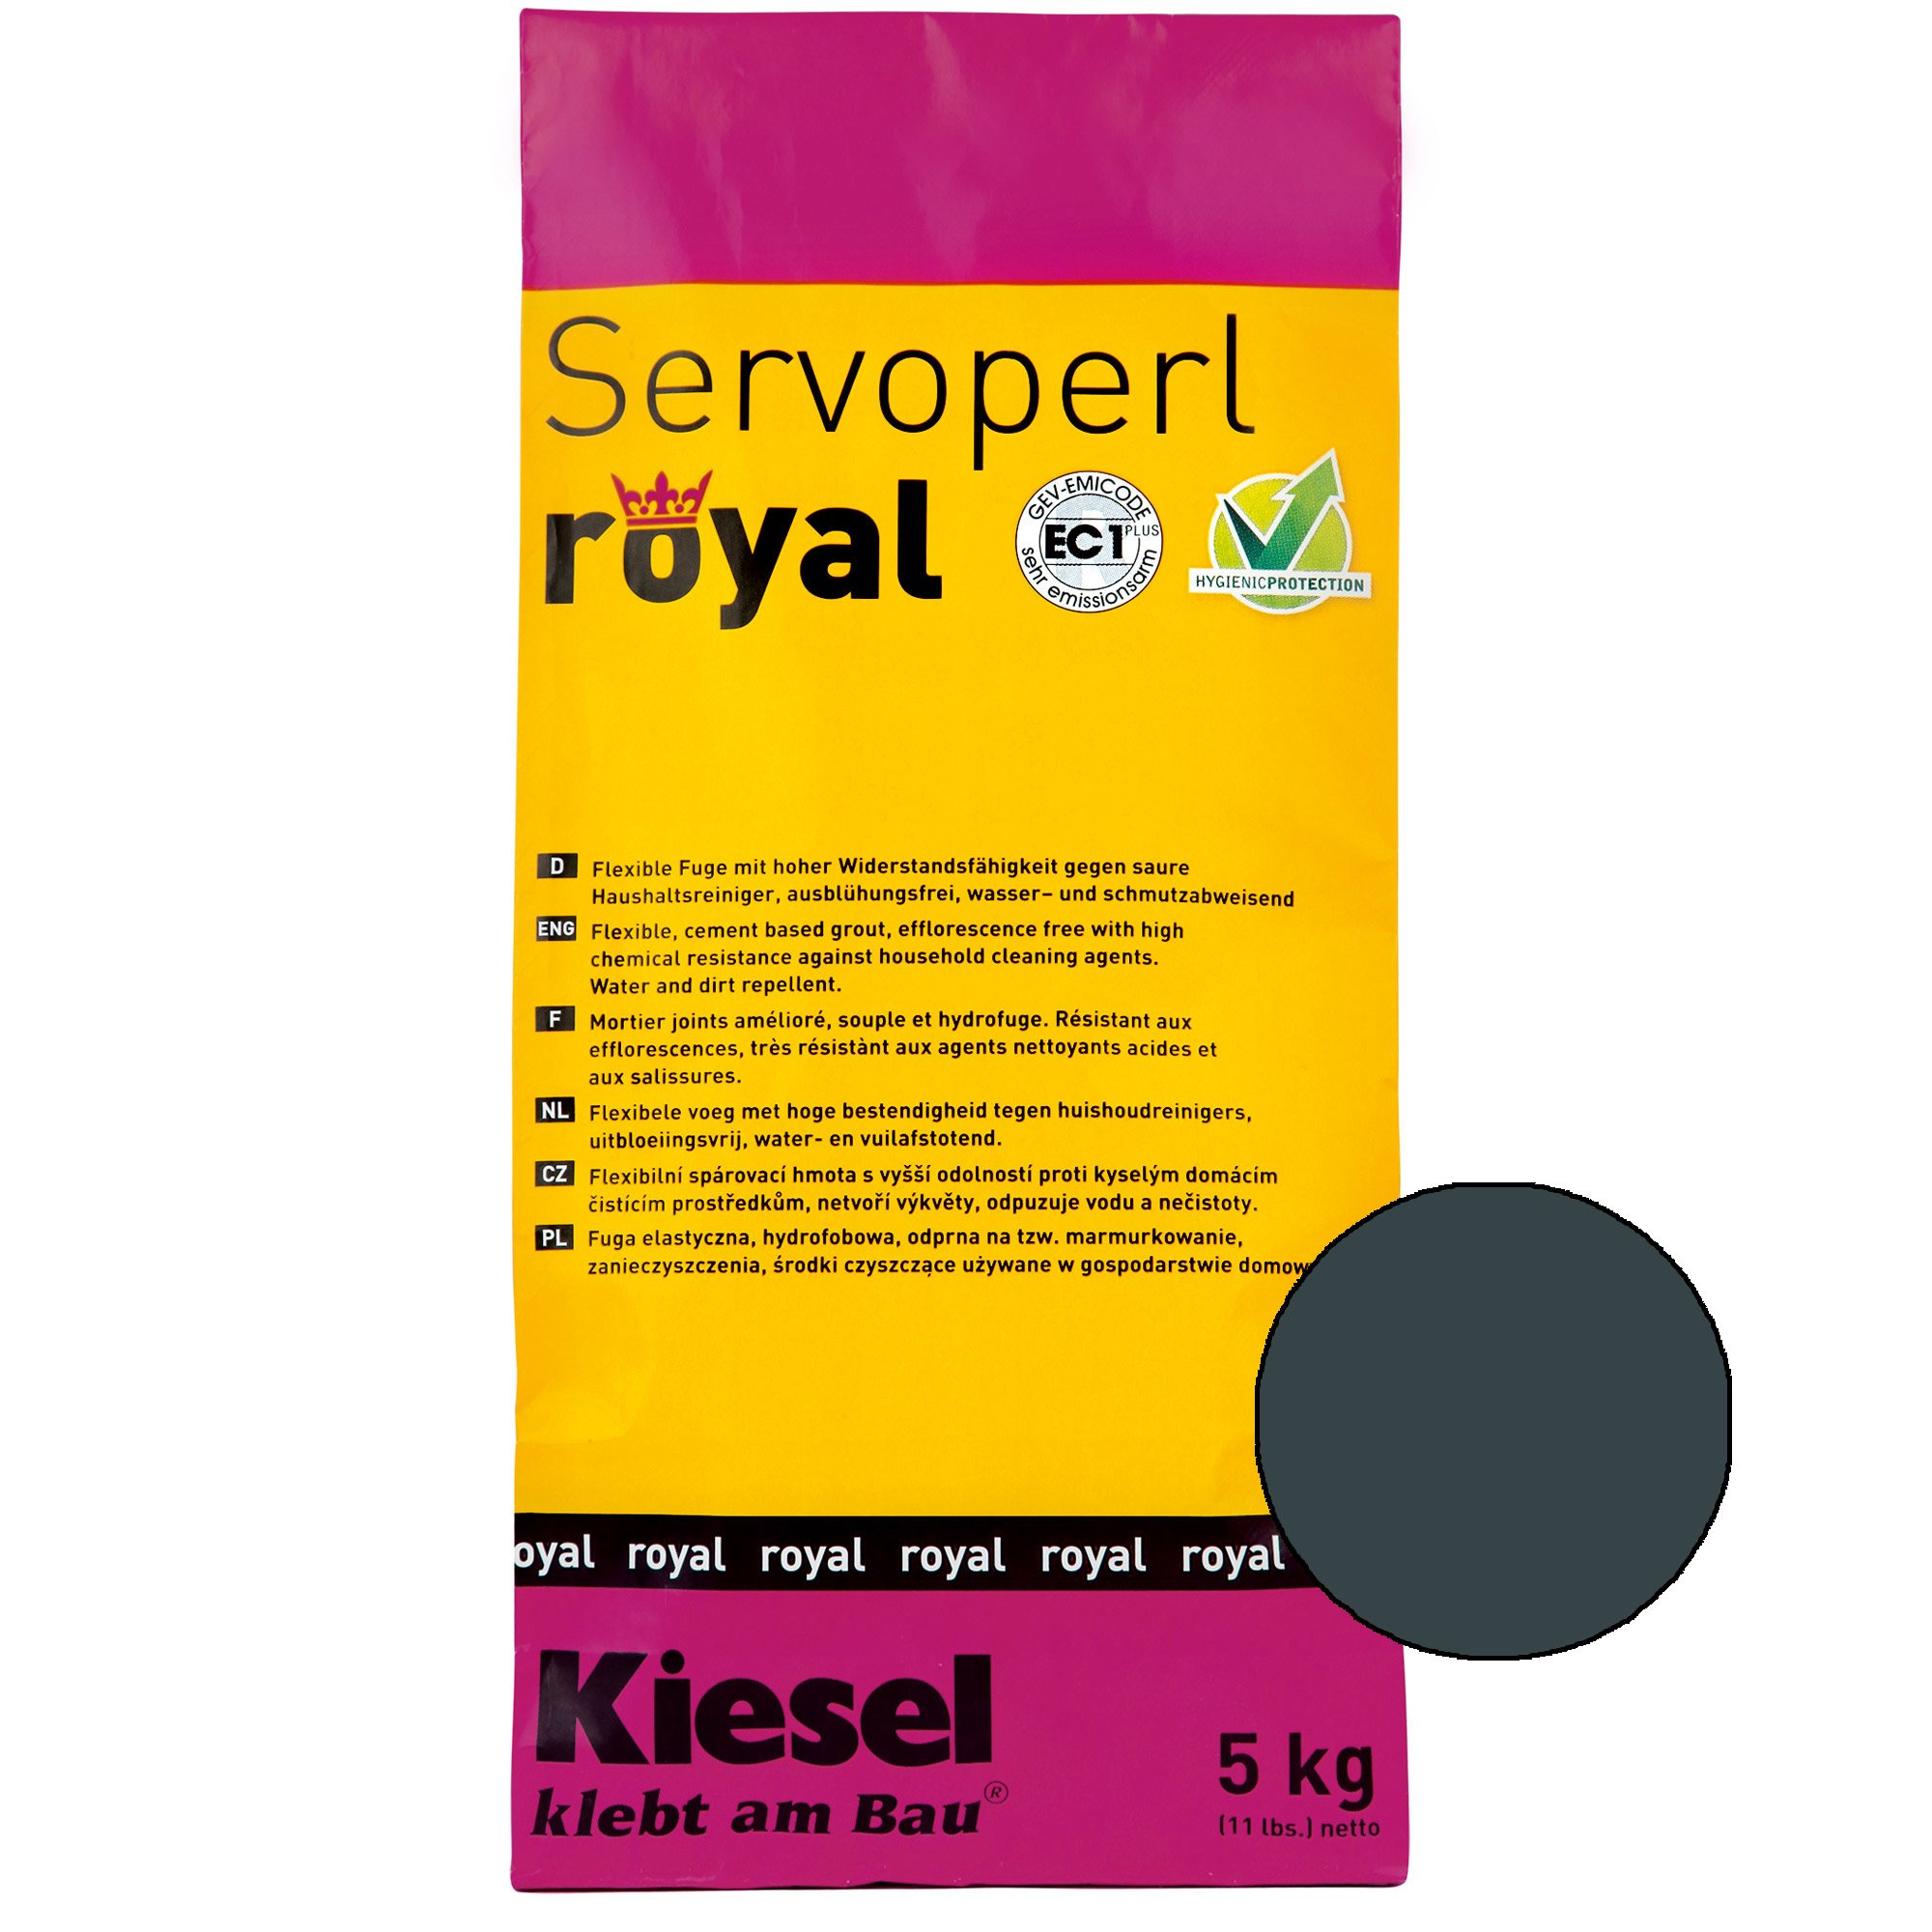 Kiesel Servoperl royal - Flexible, water- and dirt-repellent joint (5KG Desert Sand)